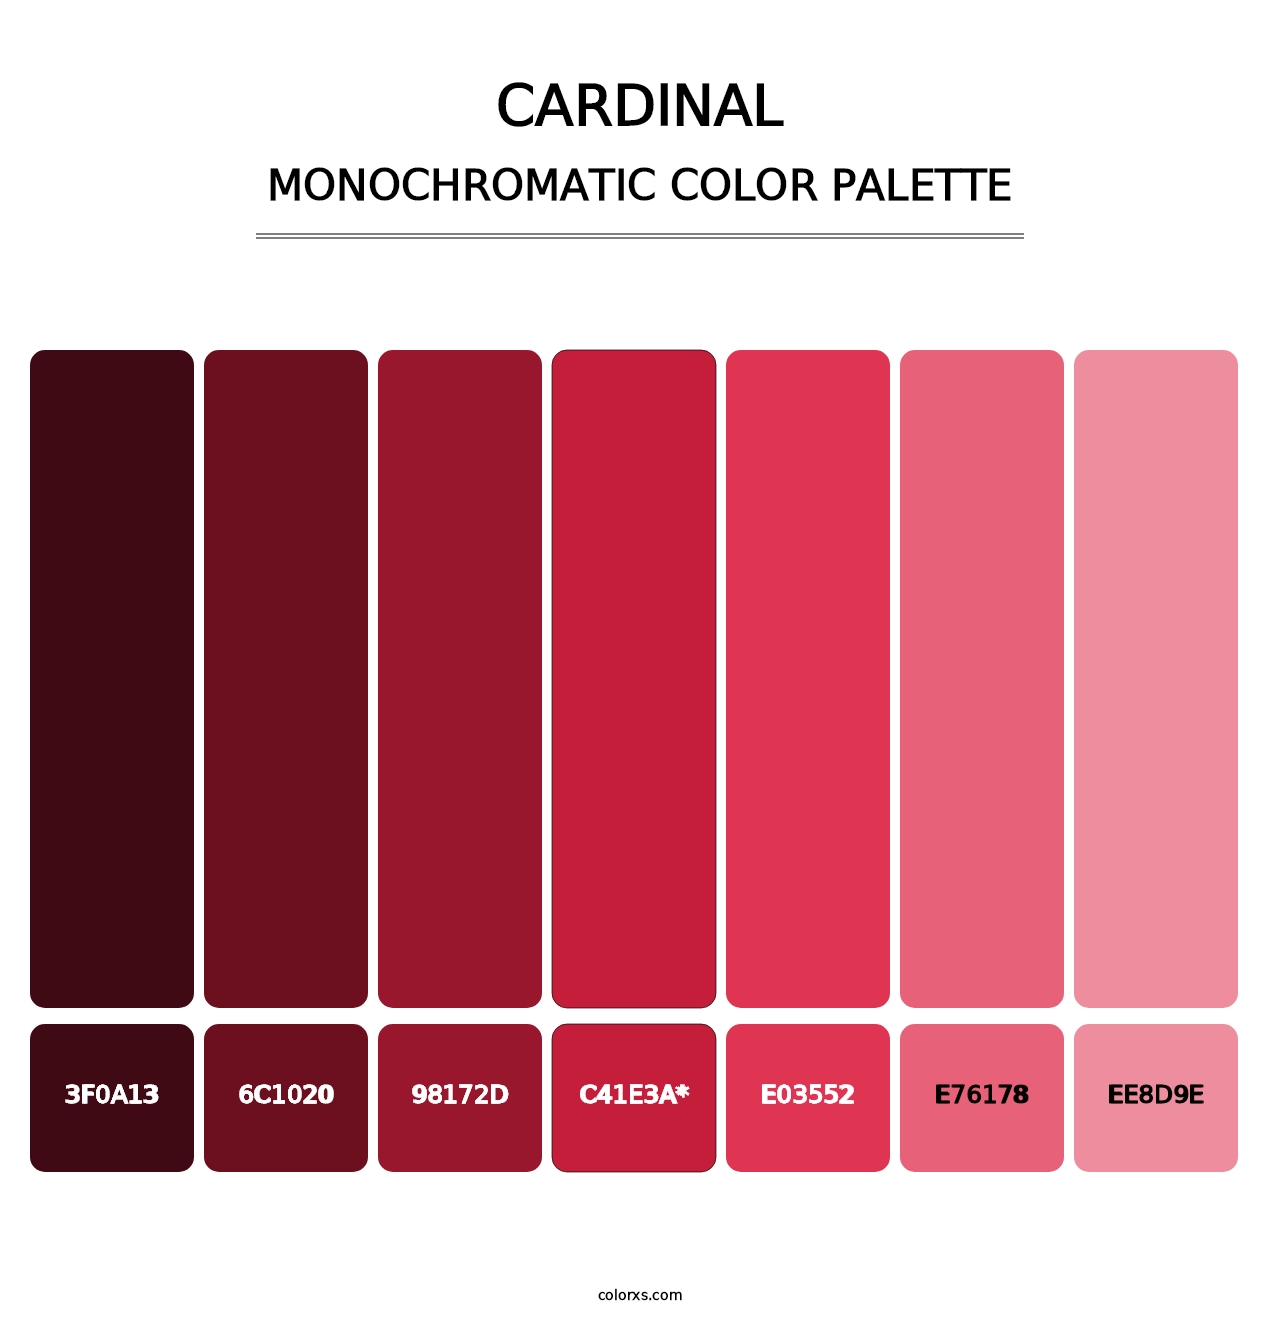 Cardinal - Monochromatic Color Palette